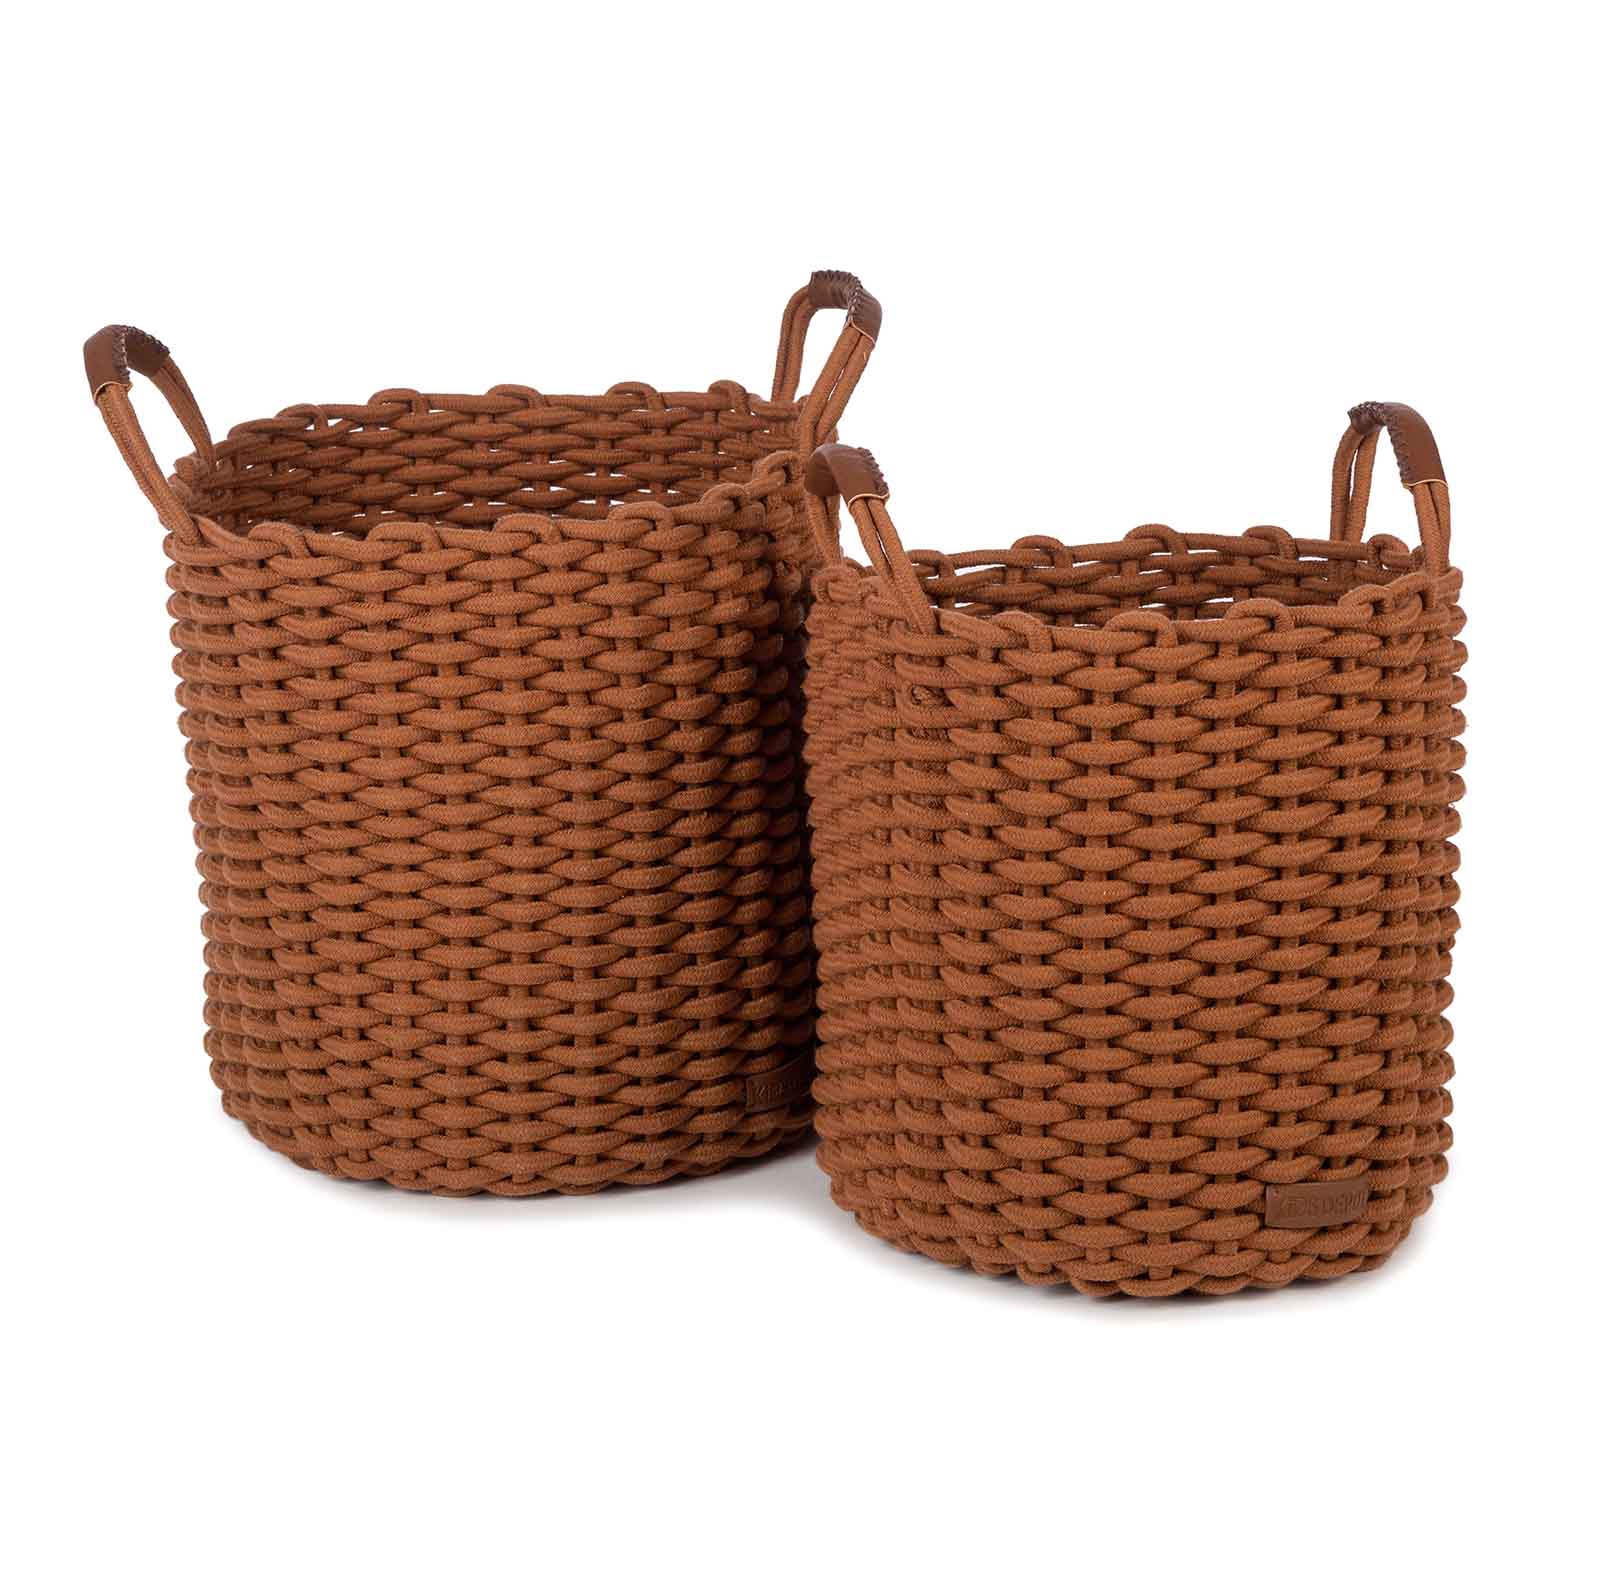 KidsDepot Korbo Basket Size L - 2 pieces